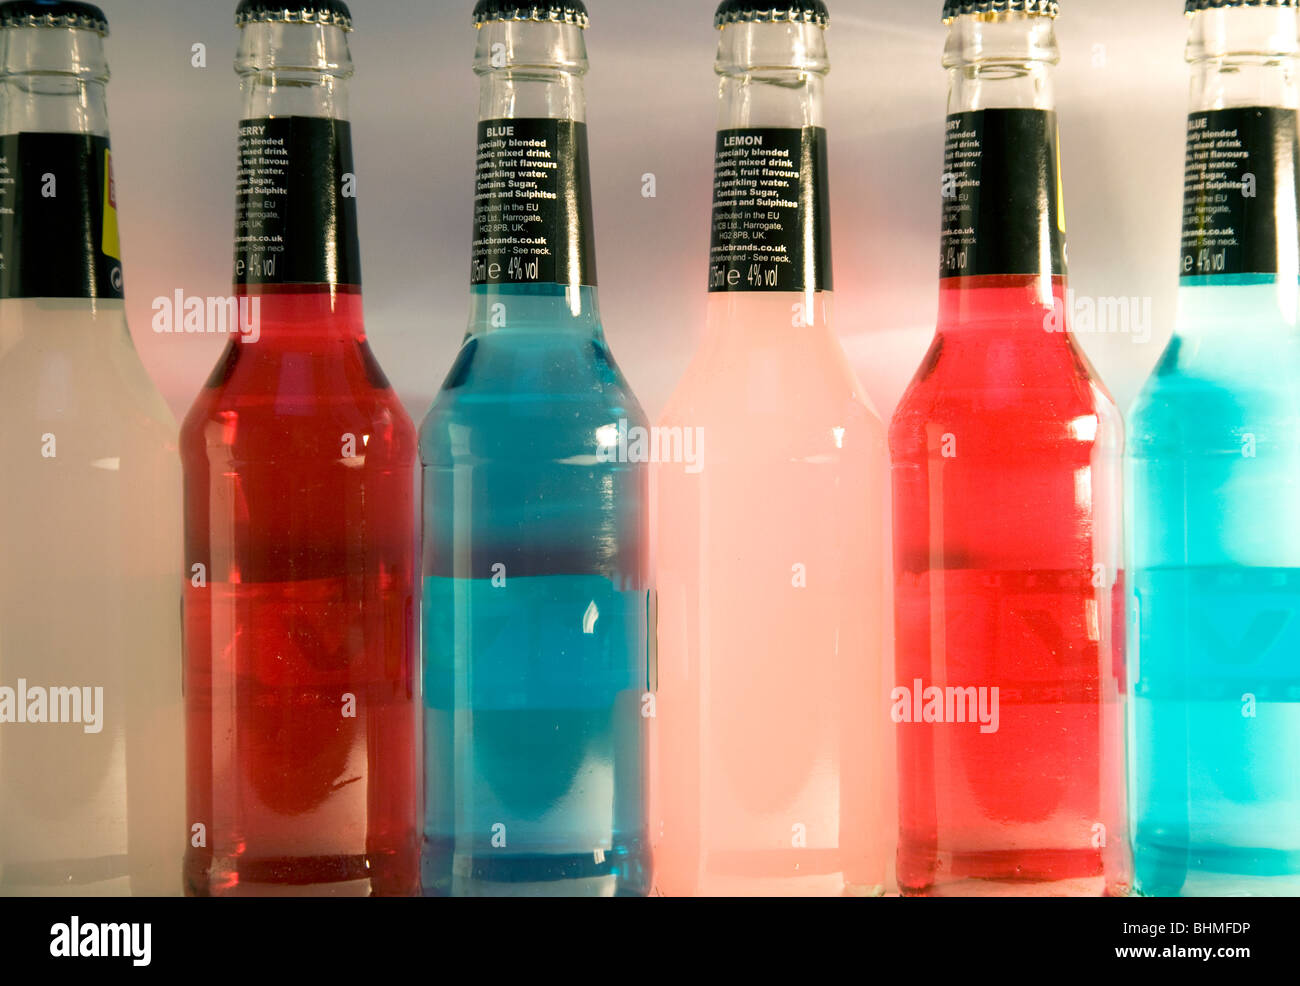 Bottles of alcopop drinks Stock Photo